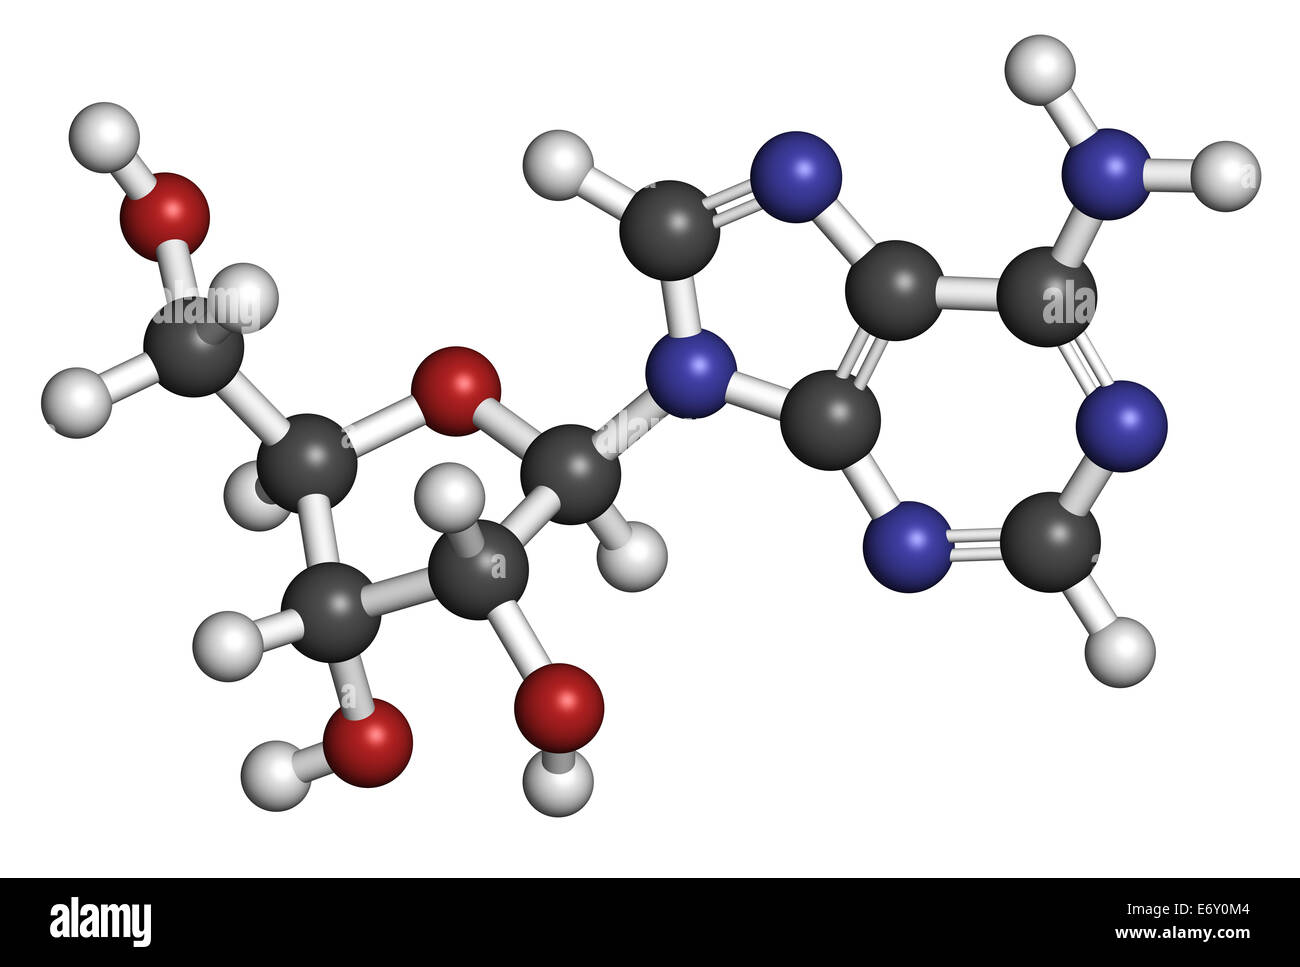 L'adénosine (Ado) de la purine nucléoside molécule. Composante importante de l'ATP, ADP, cAMP et de l'ARN. Aussi utilisé comme médicament. Les atomes sont repré Banque D'Images